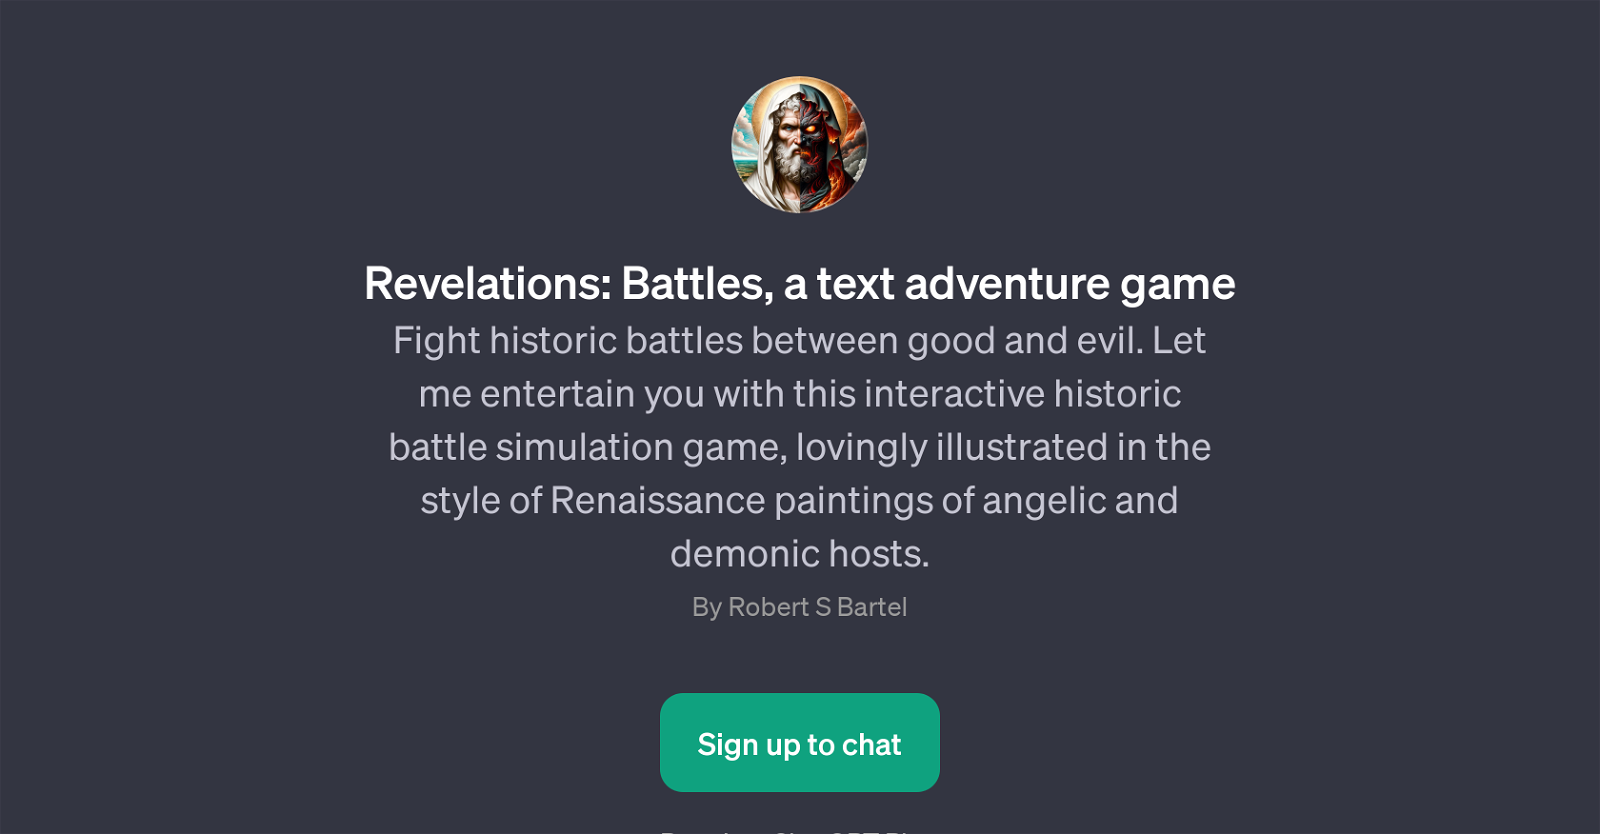 Revelations: Battles website